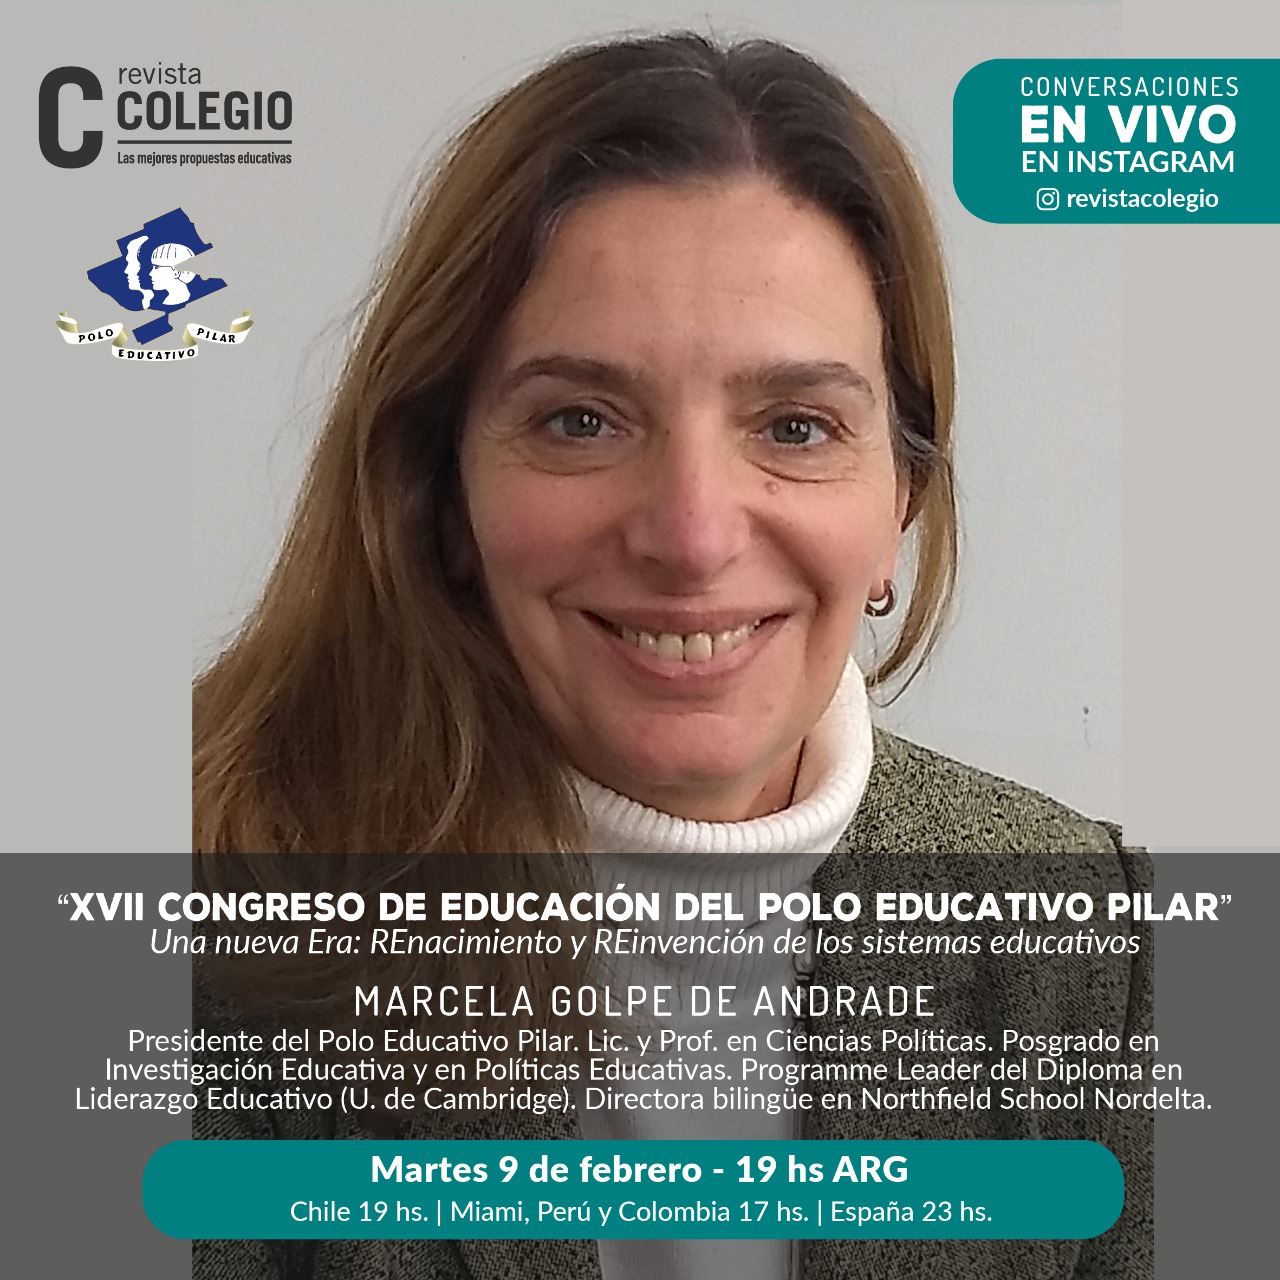 Revista Colegio dialogará este martes con Marcela Golpe de Andrade, presidenta del Polo Educativo Pilar